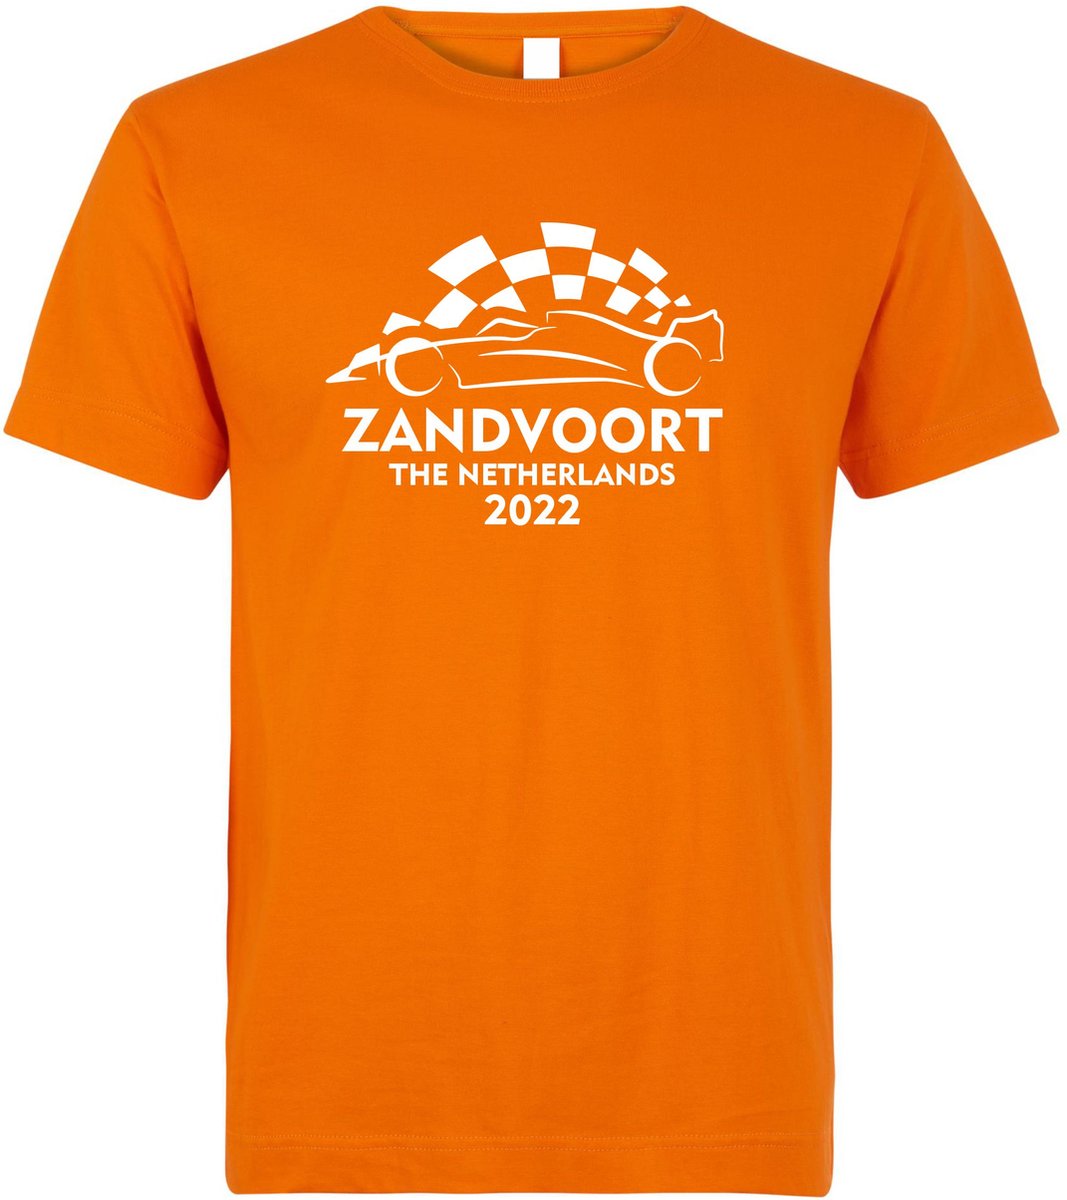 T-shirt kinderen Zandvoort 2022 met raceauto | Max Verstappen / Red Bull Racing / Formule 1 fan | Grand Prix Circuit Zandvoort | kleding shirt | Oranje | maat 80